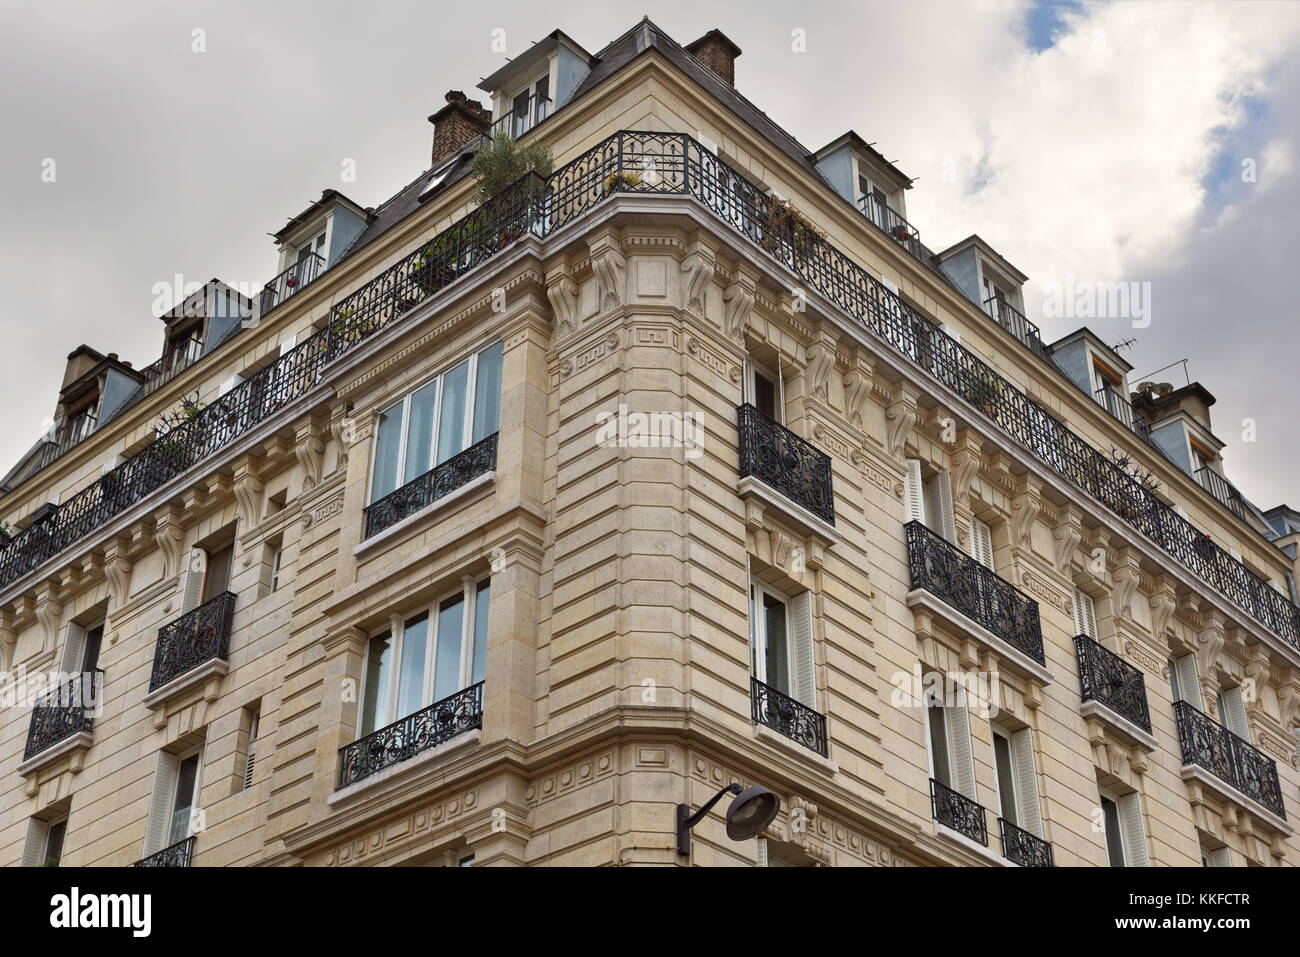 (Uno di) la culla della Fotografia moderna: Appartamento di Eugène Atget -rue Campagne-Premiére, 17 bis - Parigi, Francia Foto Stock